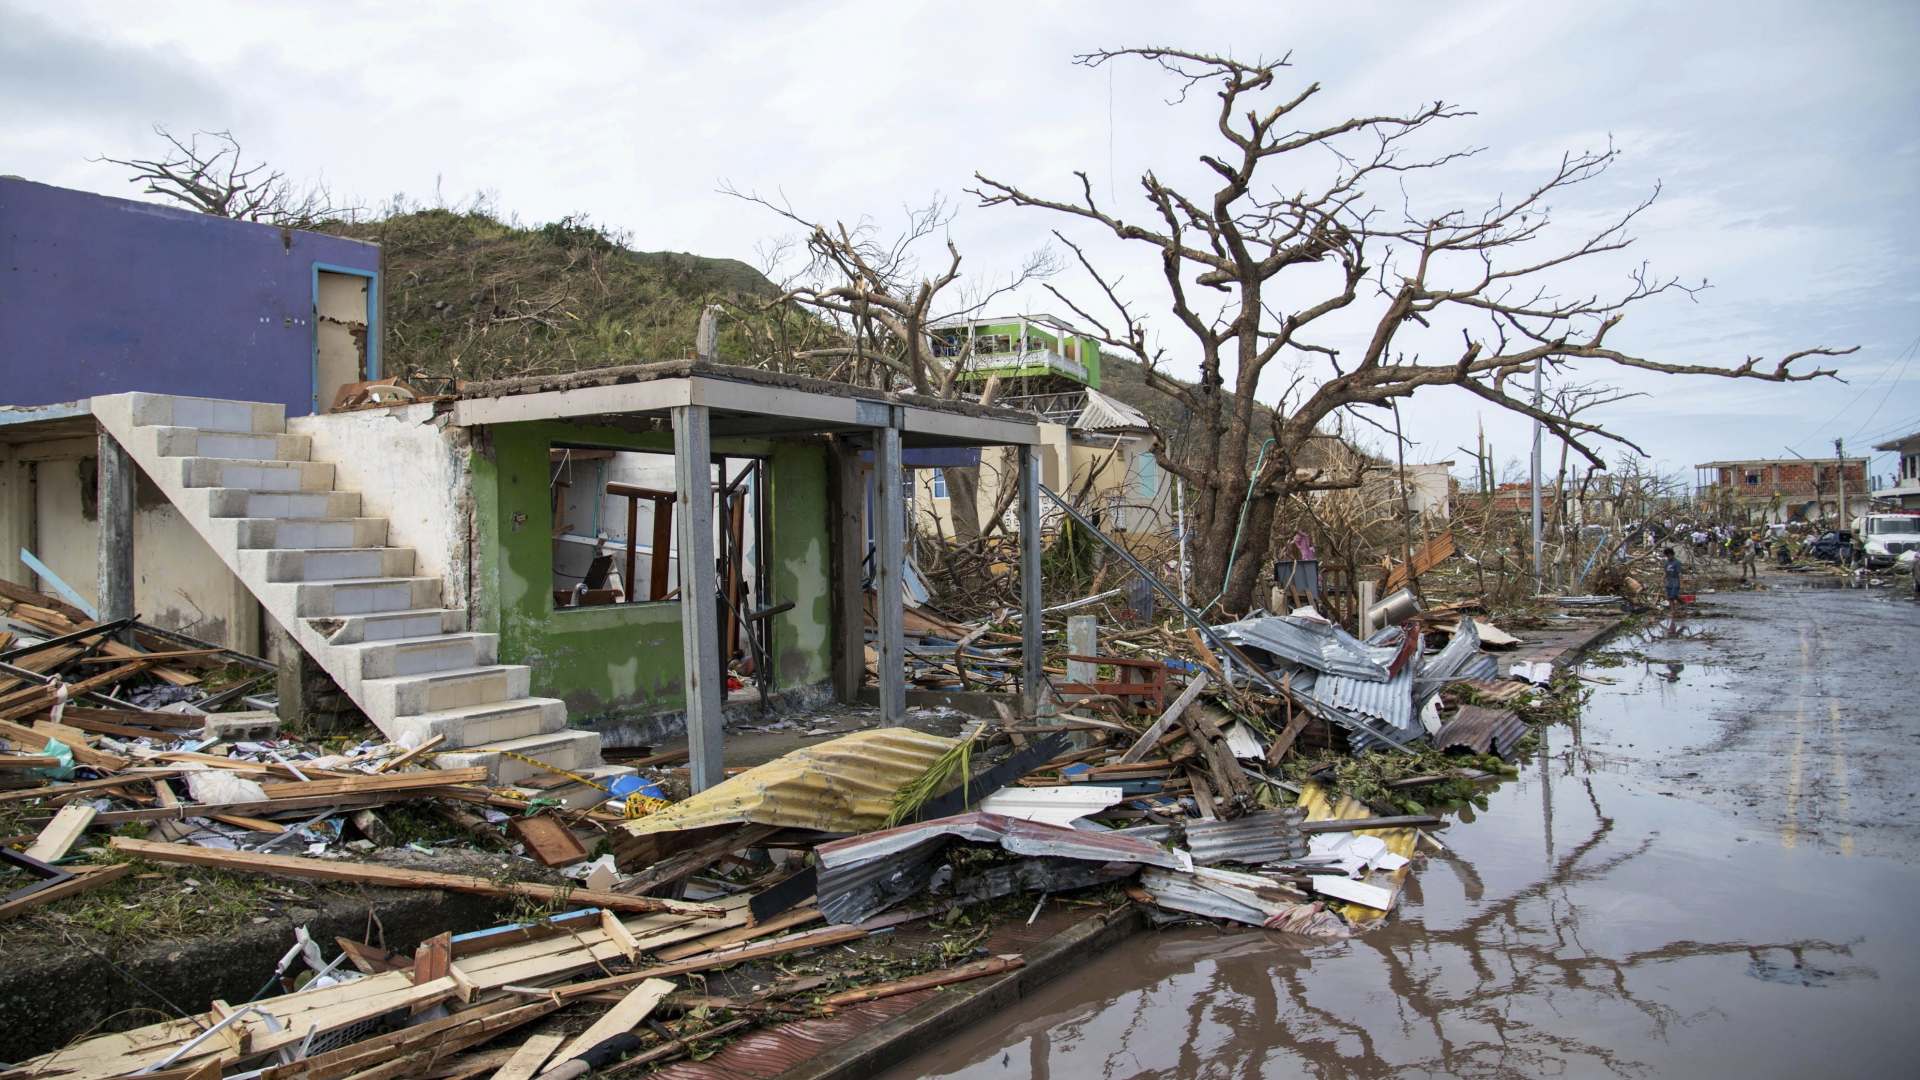 Schäden durch den Hurrikan "Iota" in Kolumbien | dpa